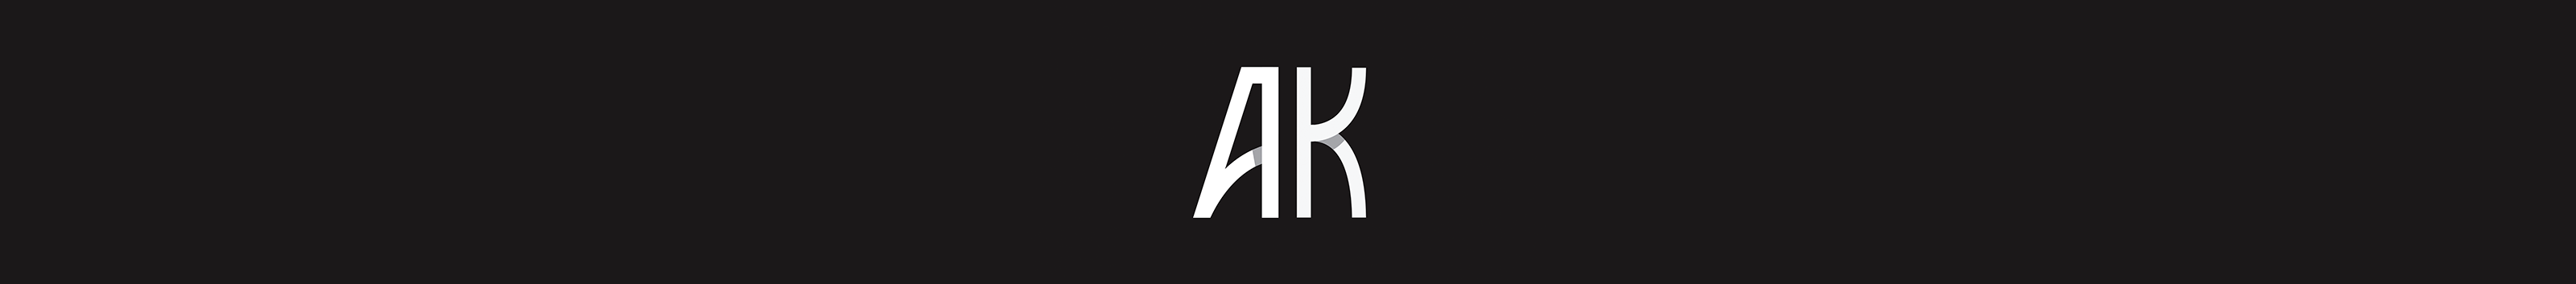 Arthur K's profile banner